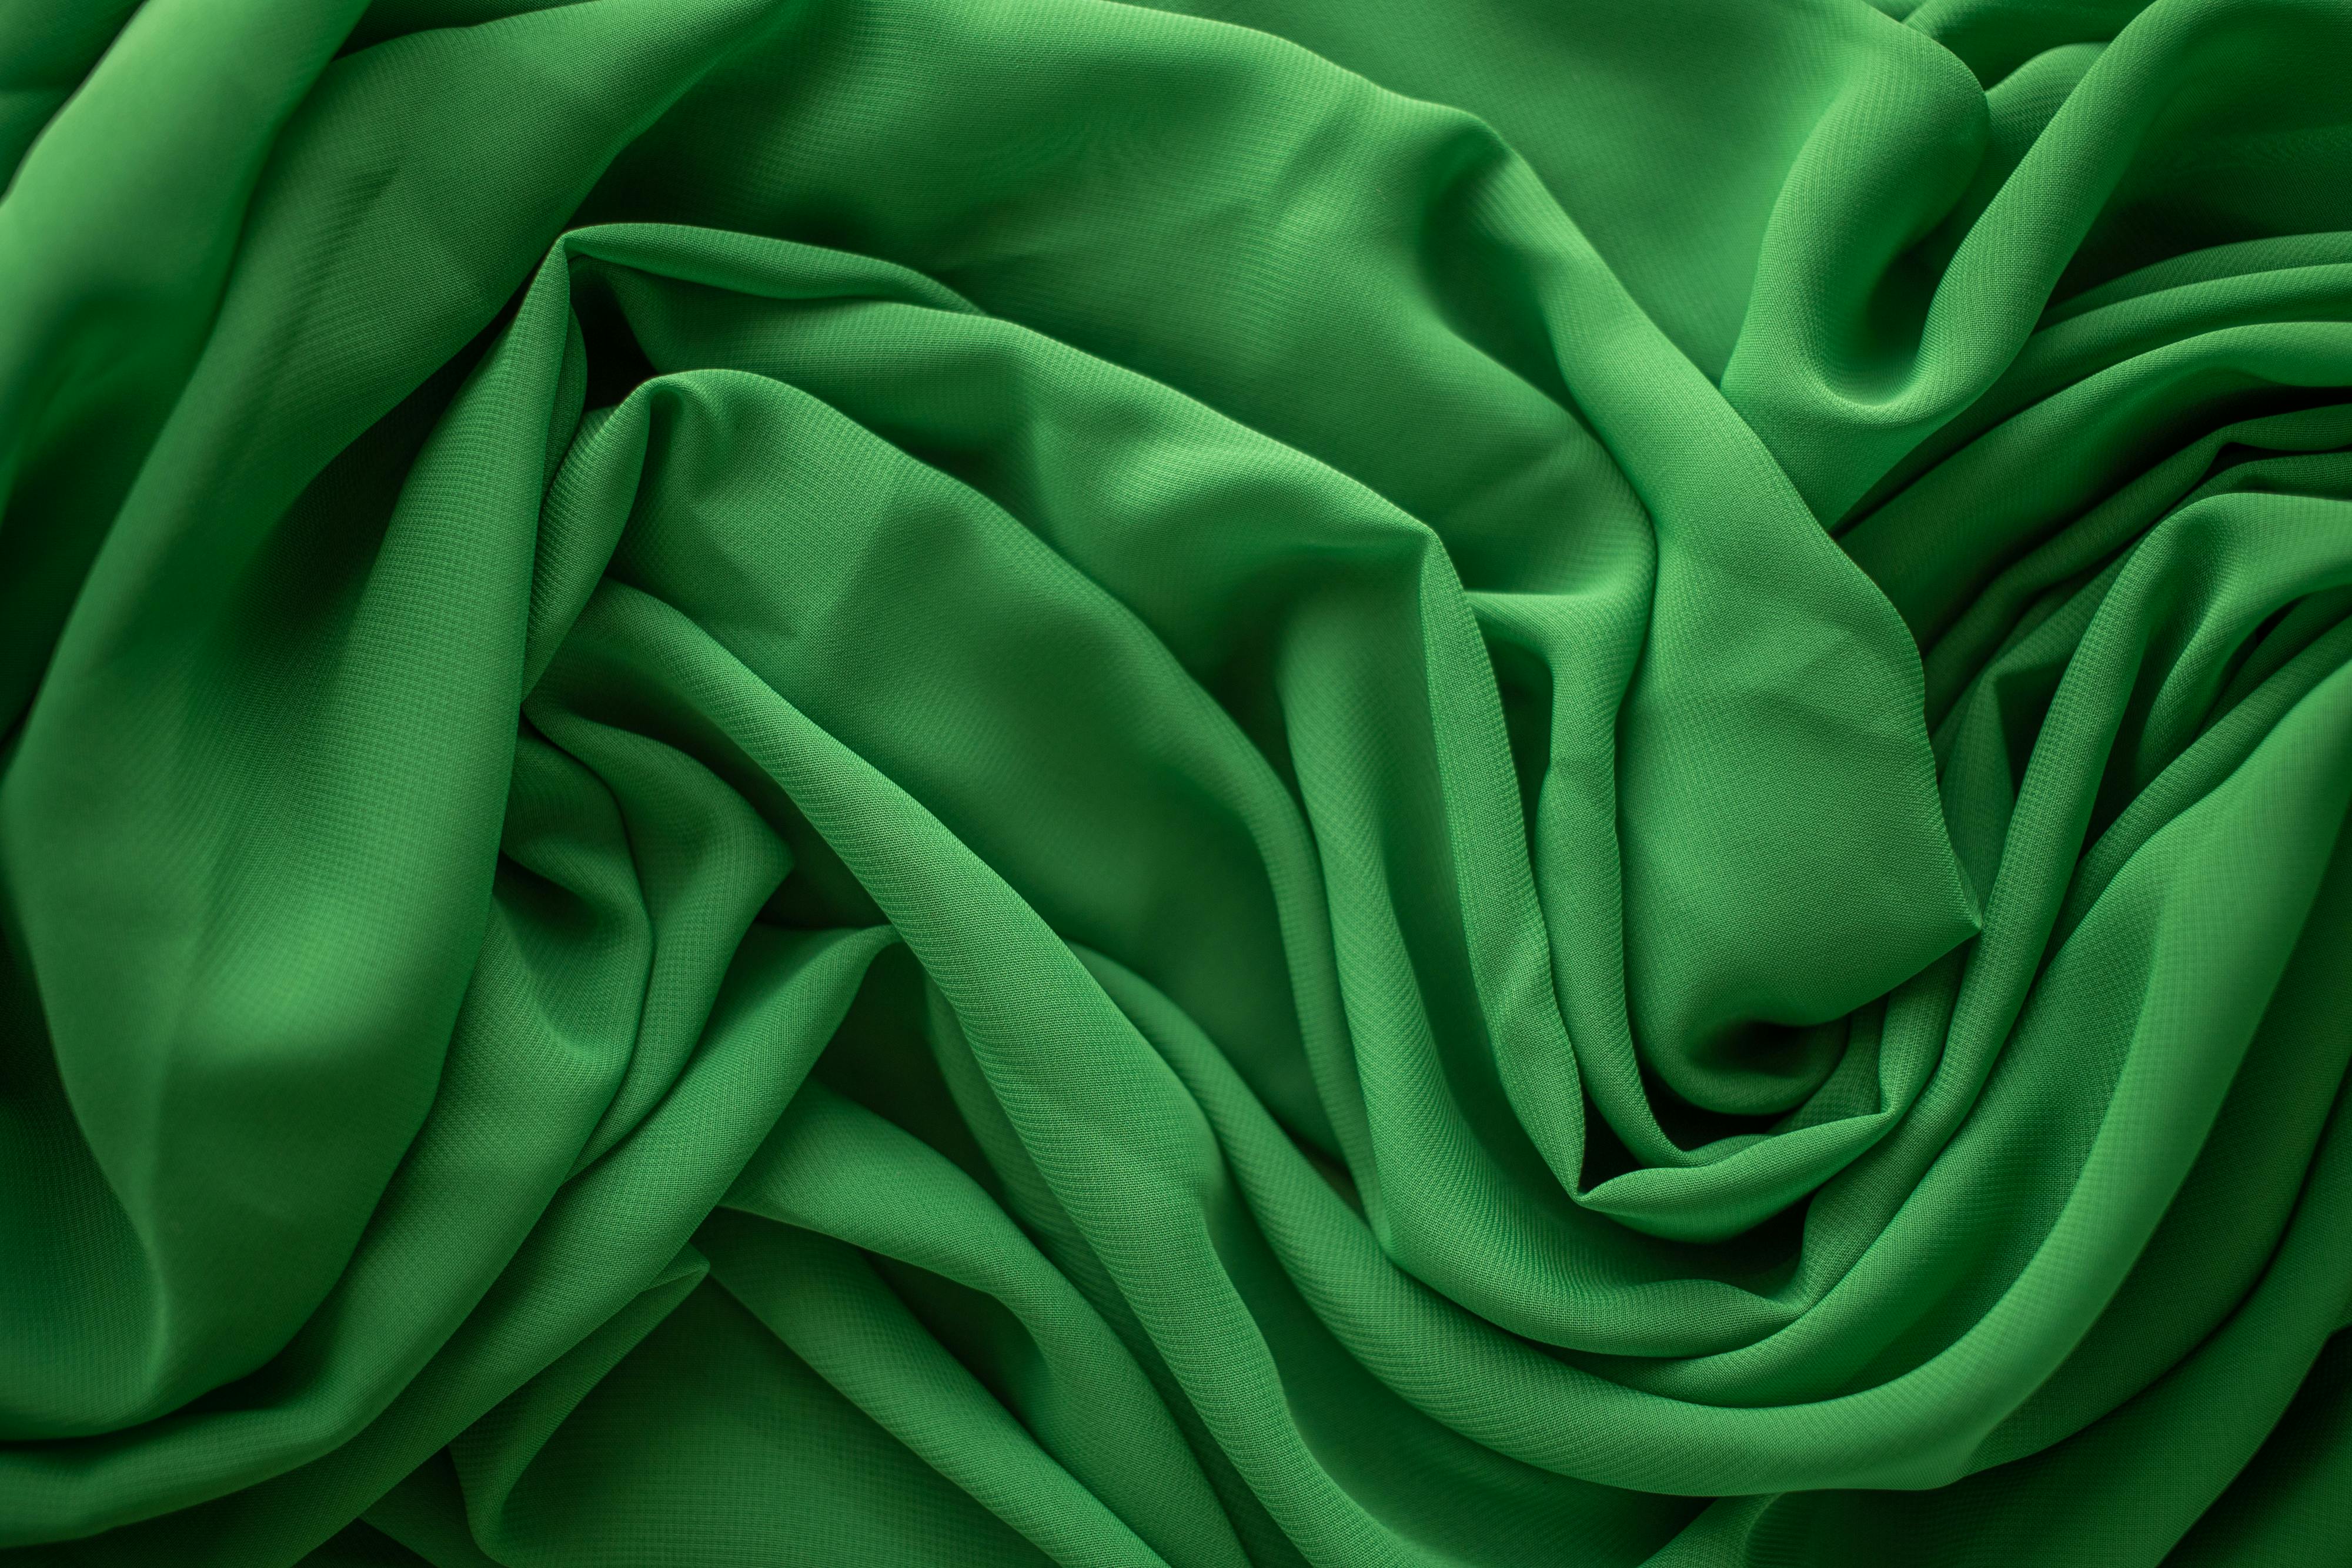 Nền vải màu xanh lá cây tươi mới sẽ mang đến cho bạn cảm giác thư thái và yên bình. Hãy xem hình ngay để cảm nhận!